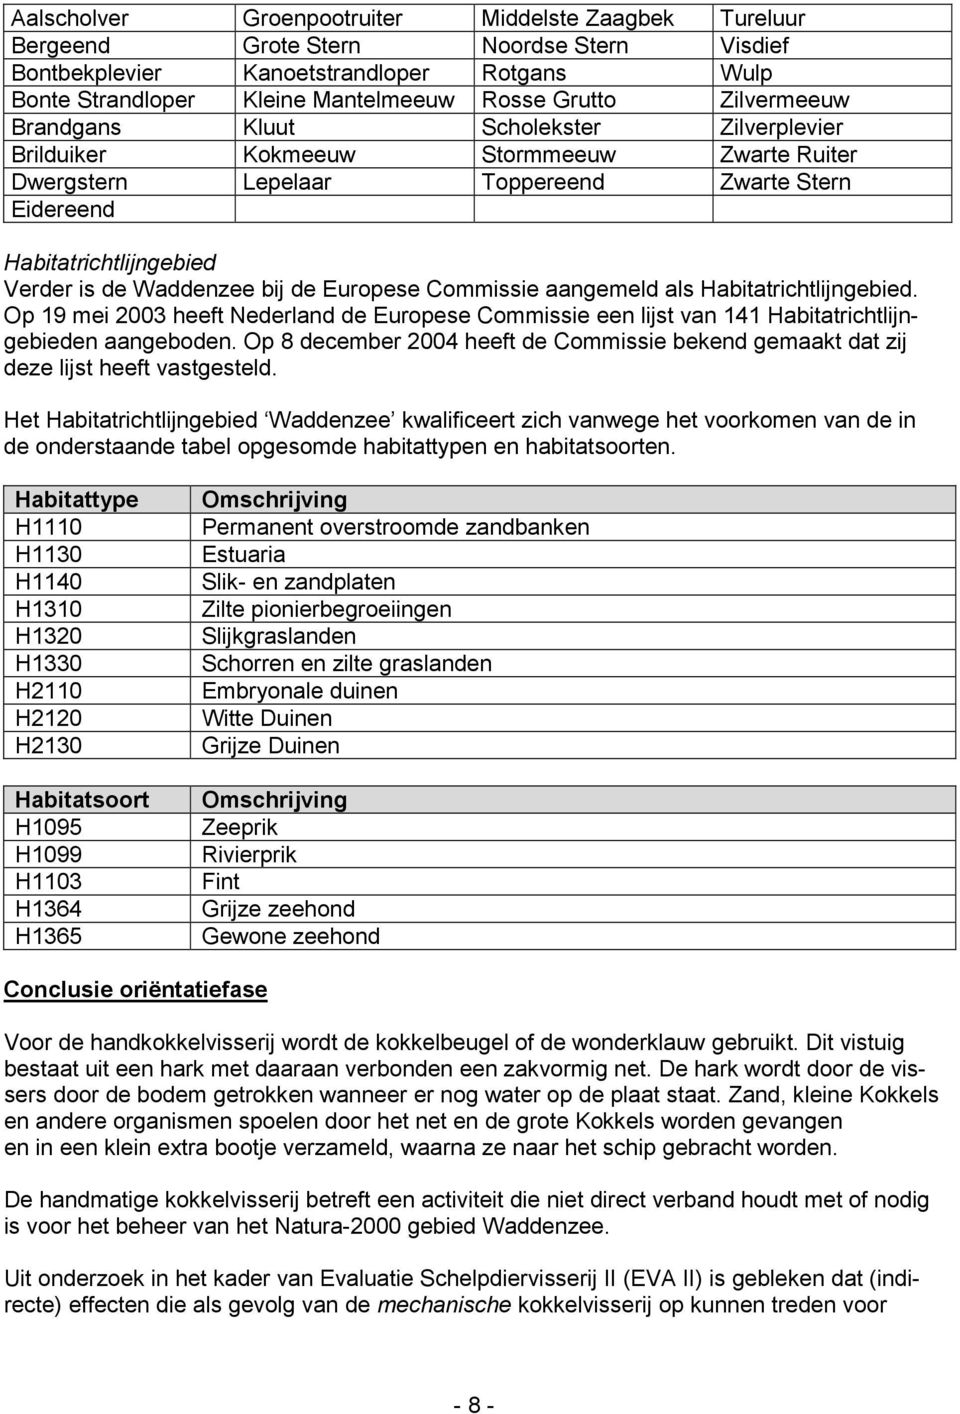 bij de Europese Commissie aangemeld als Habitatrichtlijngebied. Op 19 mei 2003 heeft Nederland de Europese Commissie een lijst van 141 Habitatrichtlijngebieden aangeboden.